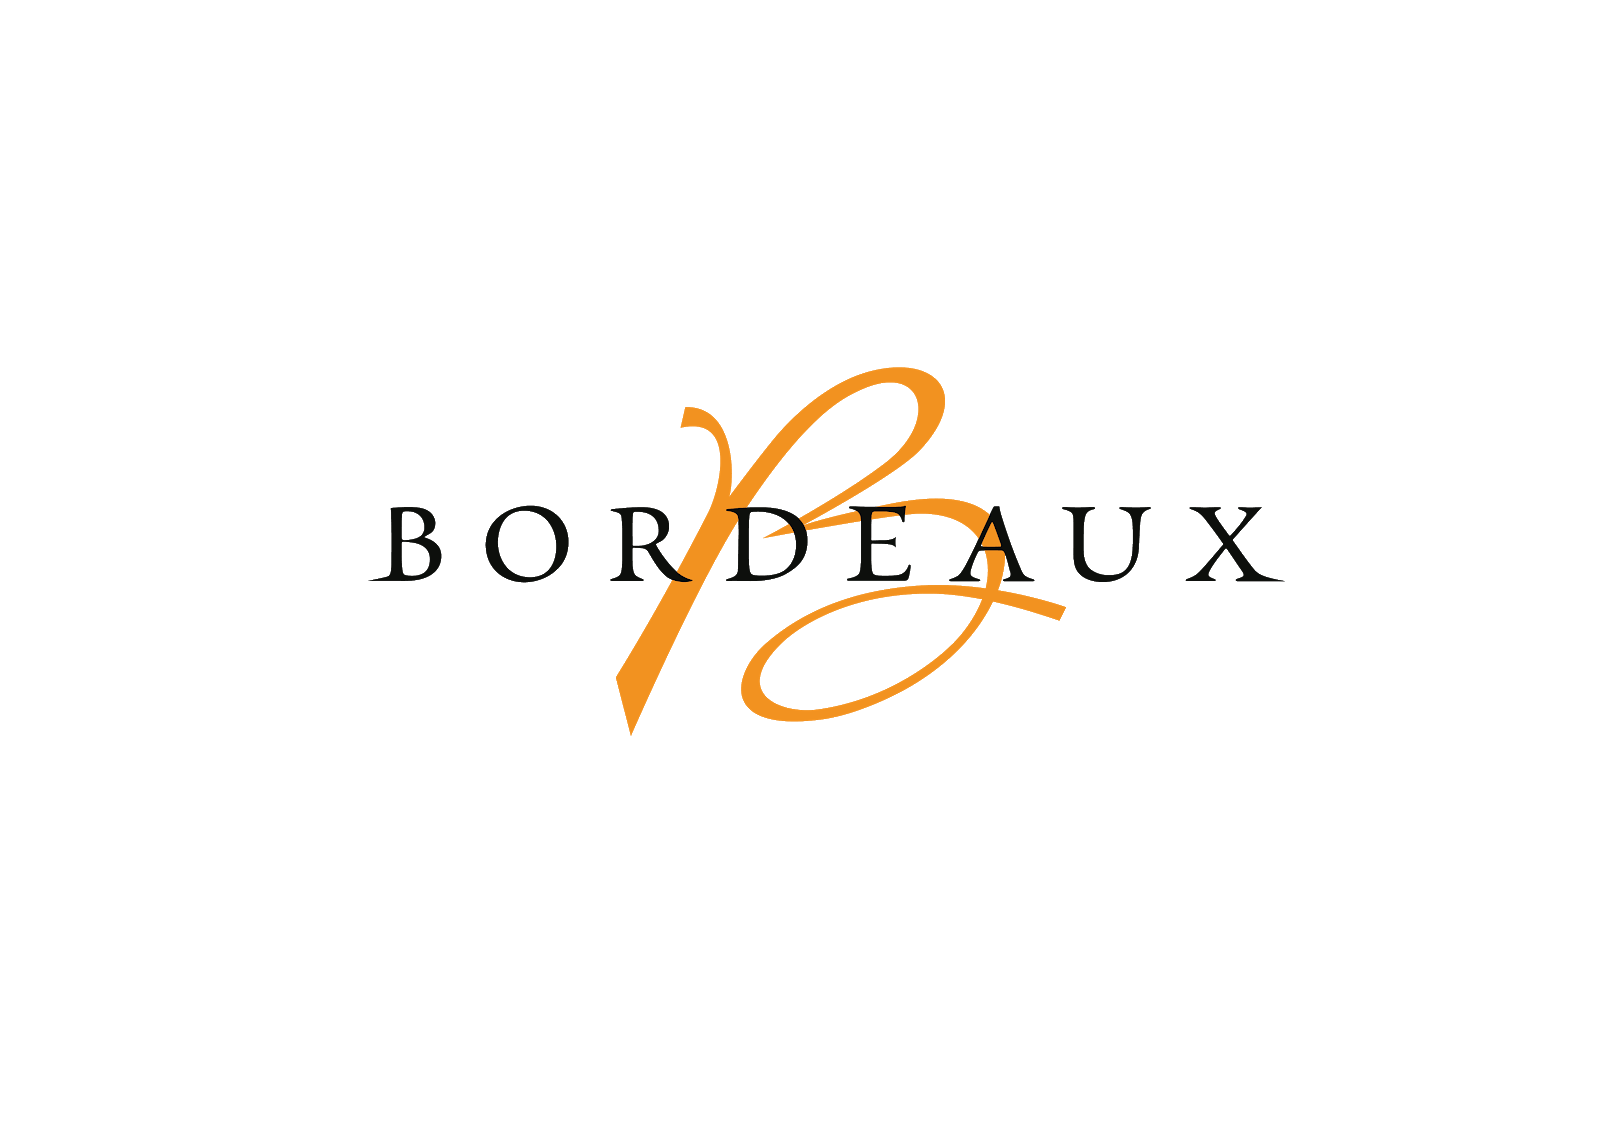 Bordeau Logo - THE BORDEAUX BRIEFING. Official website Bordeaux.com